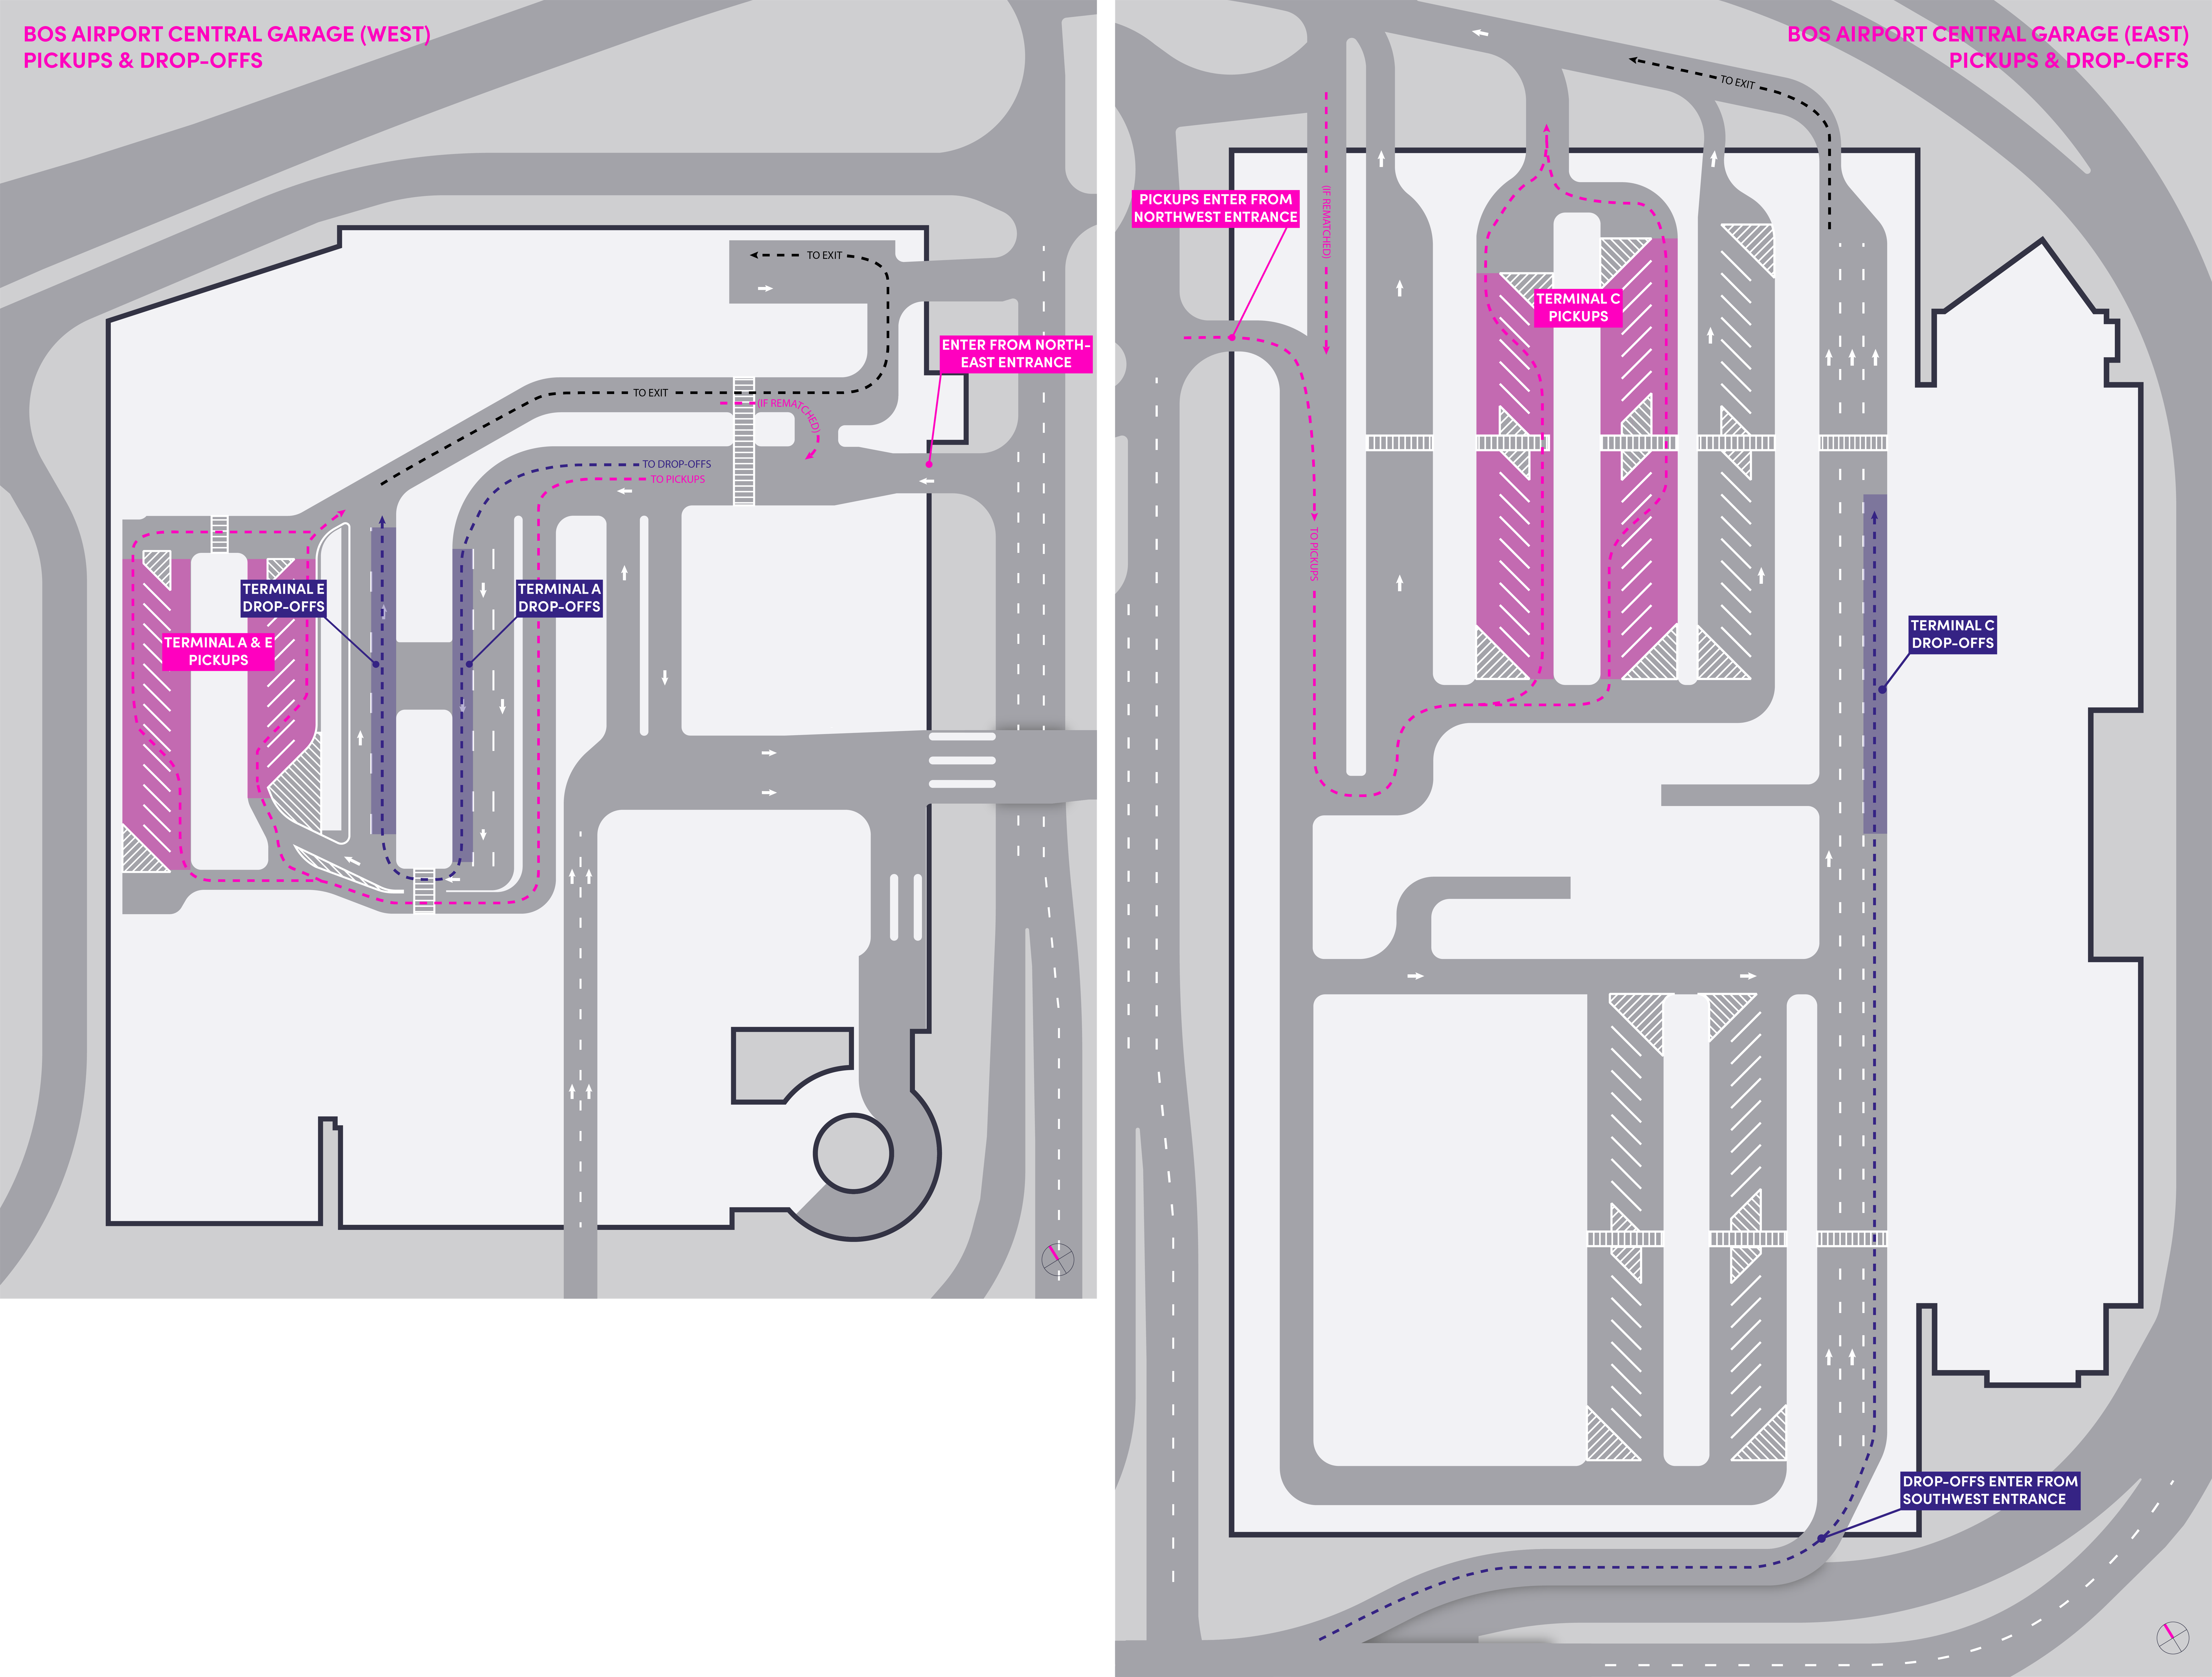 Plan du stationnement central (ouest) et du stationnement central à l'aéroport international Logan de Boston.